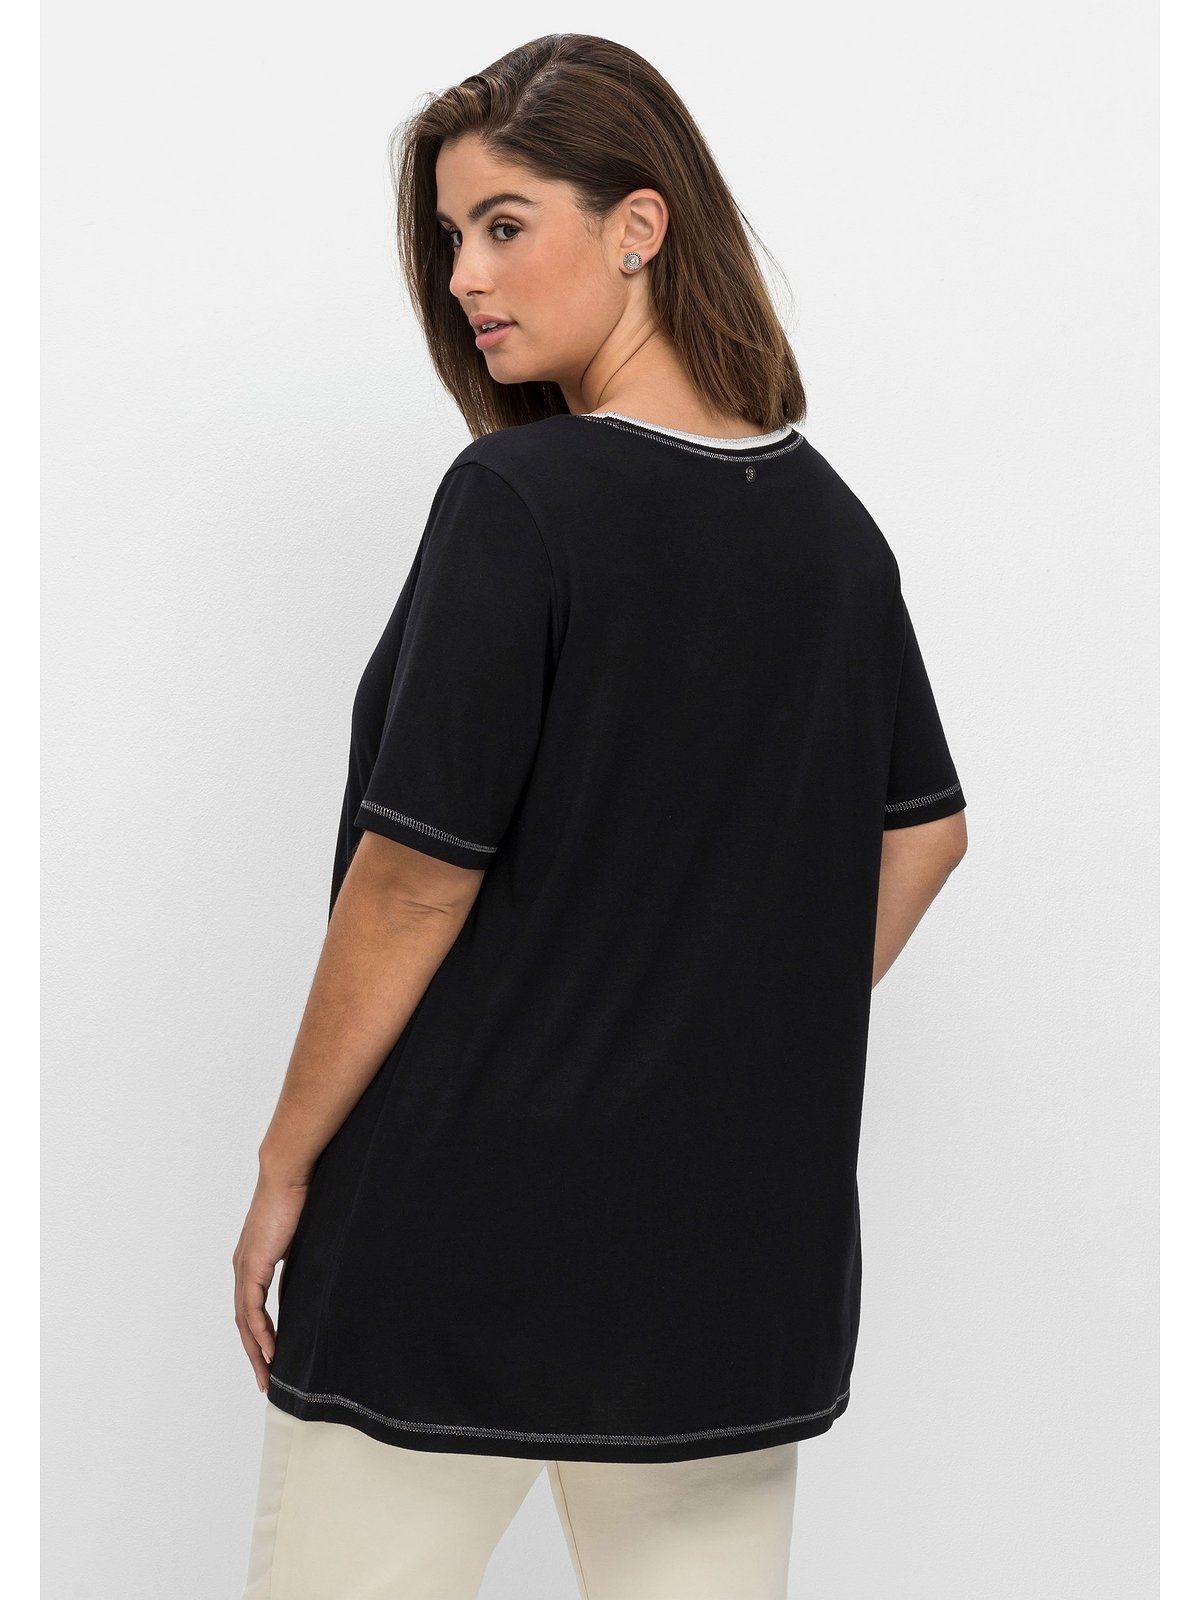 Sheego T-Shirt Große Größen mit Foliendruck vorn, in leichter A-Form